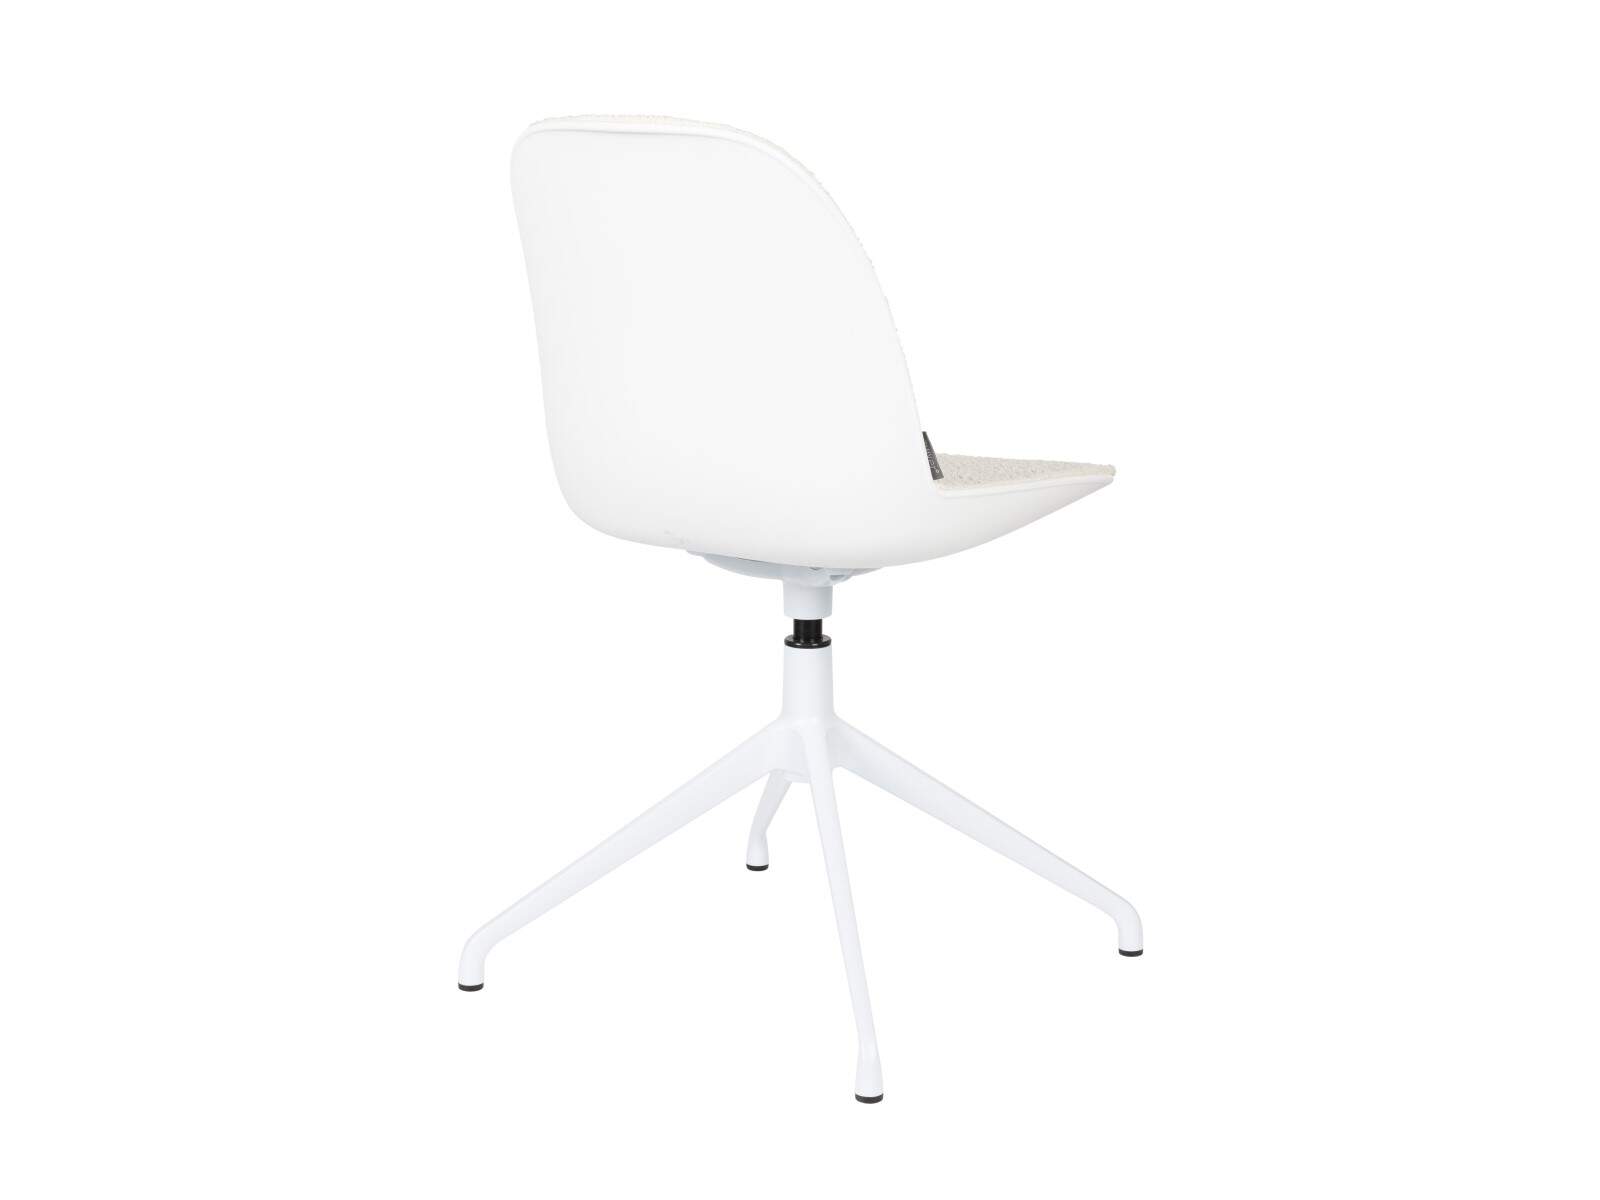 Zuiver Albert Kuip Office swivel chair white // Zuiver Albert Kuip Office irodai forgós szék fehér